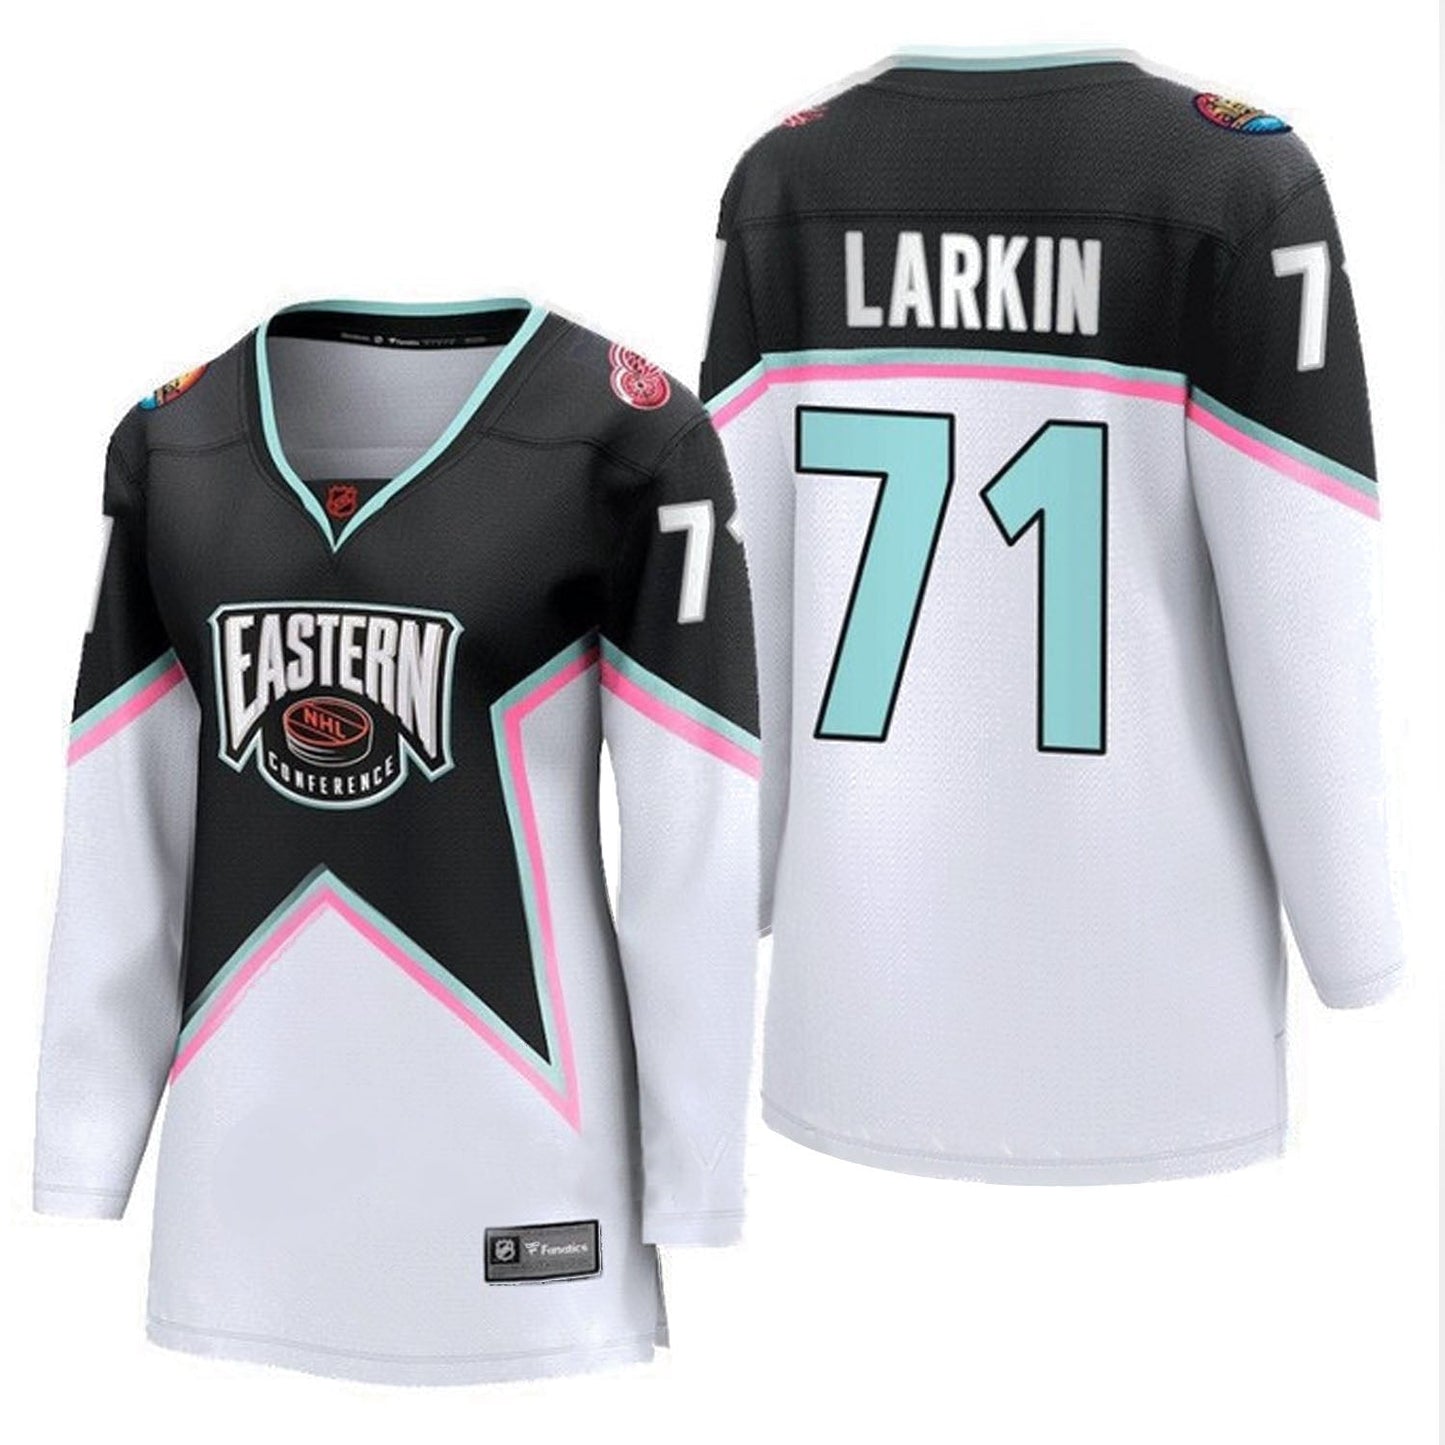 NHL Dylan Larkin Eastern All Star 71 Jersey